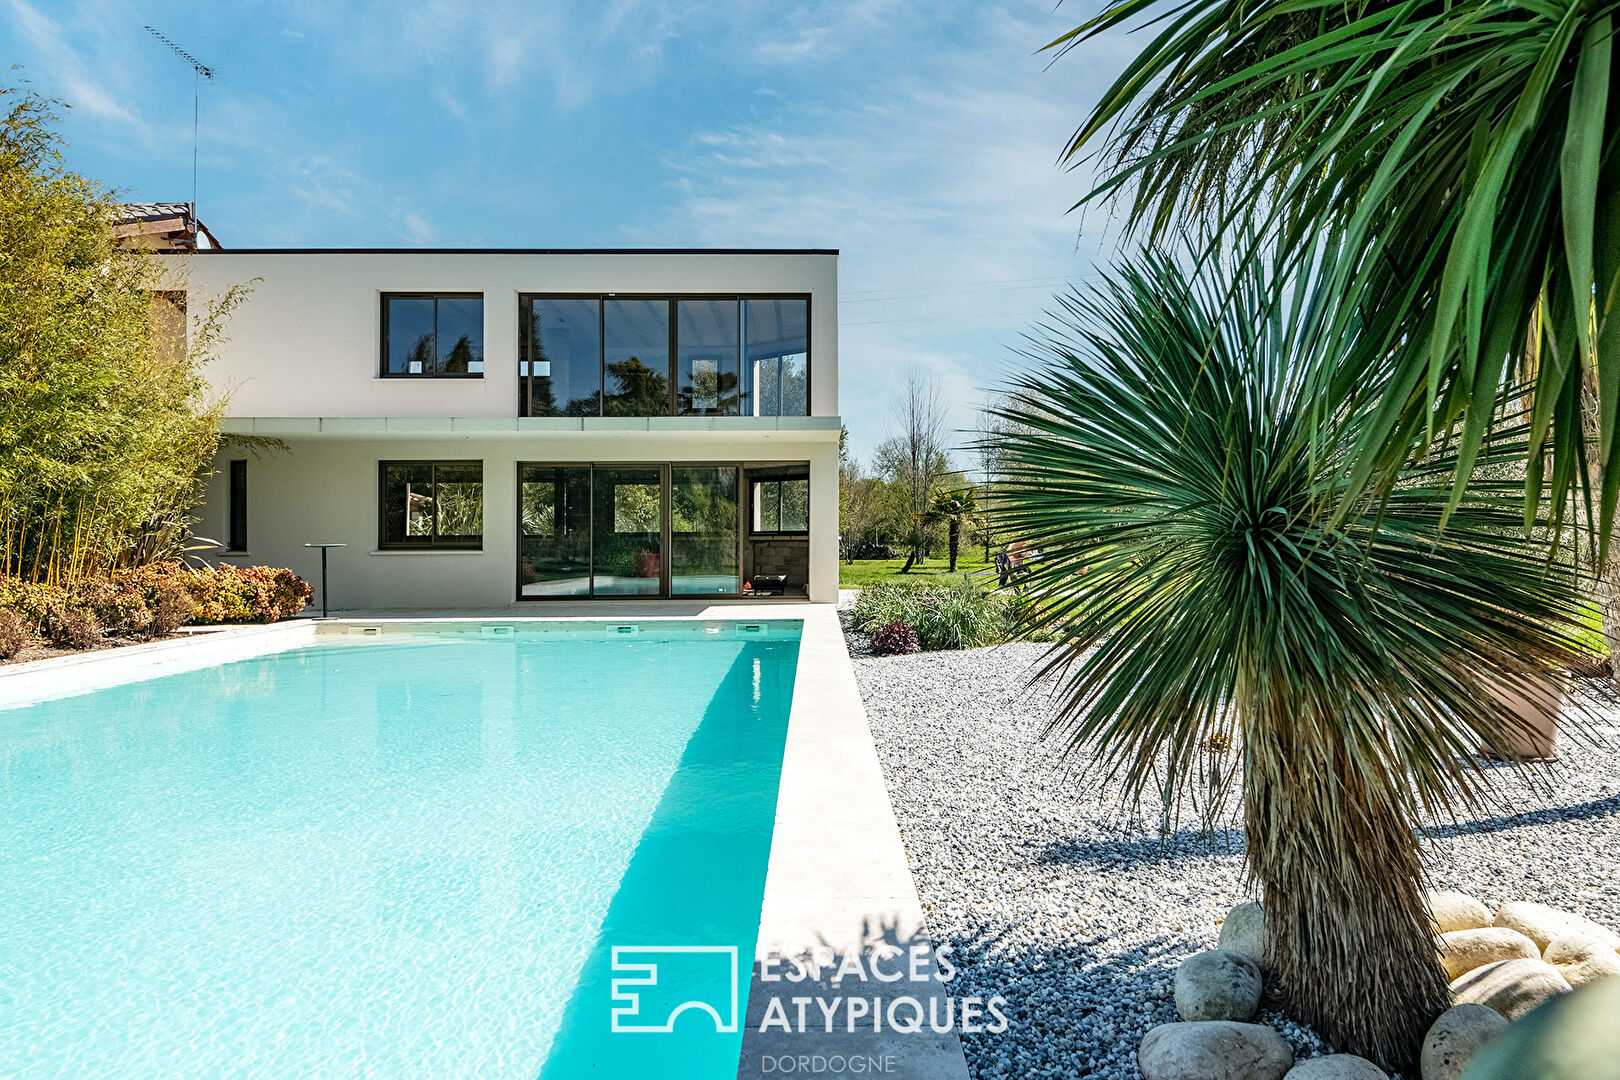 Villa avec piscine de style Néo contemporain, farniente et dolce vita…